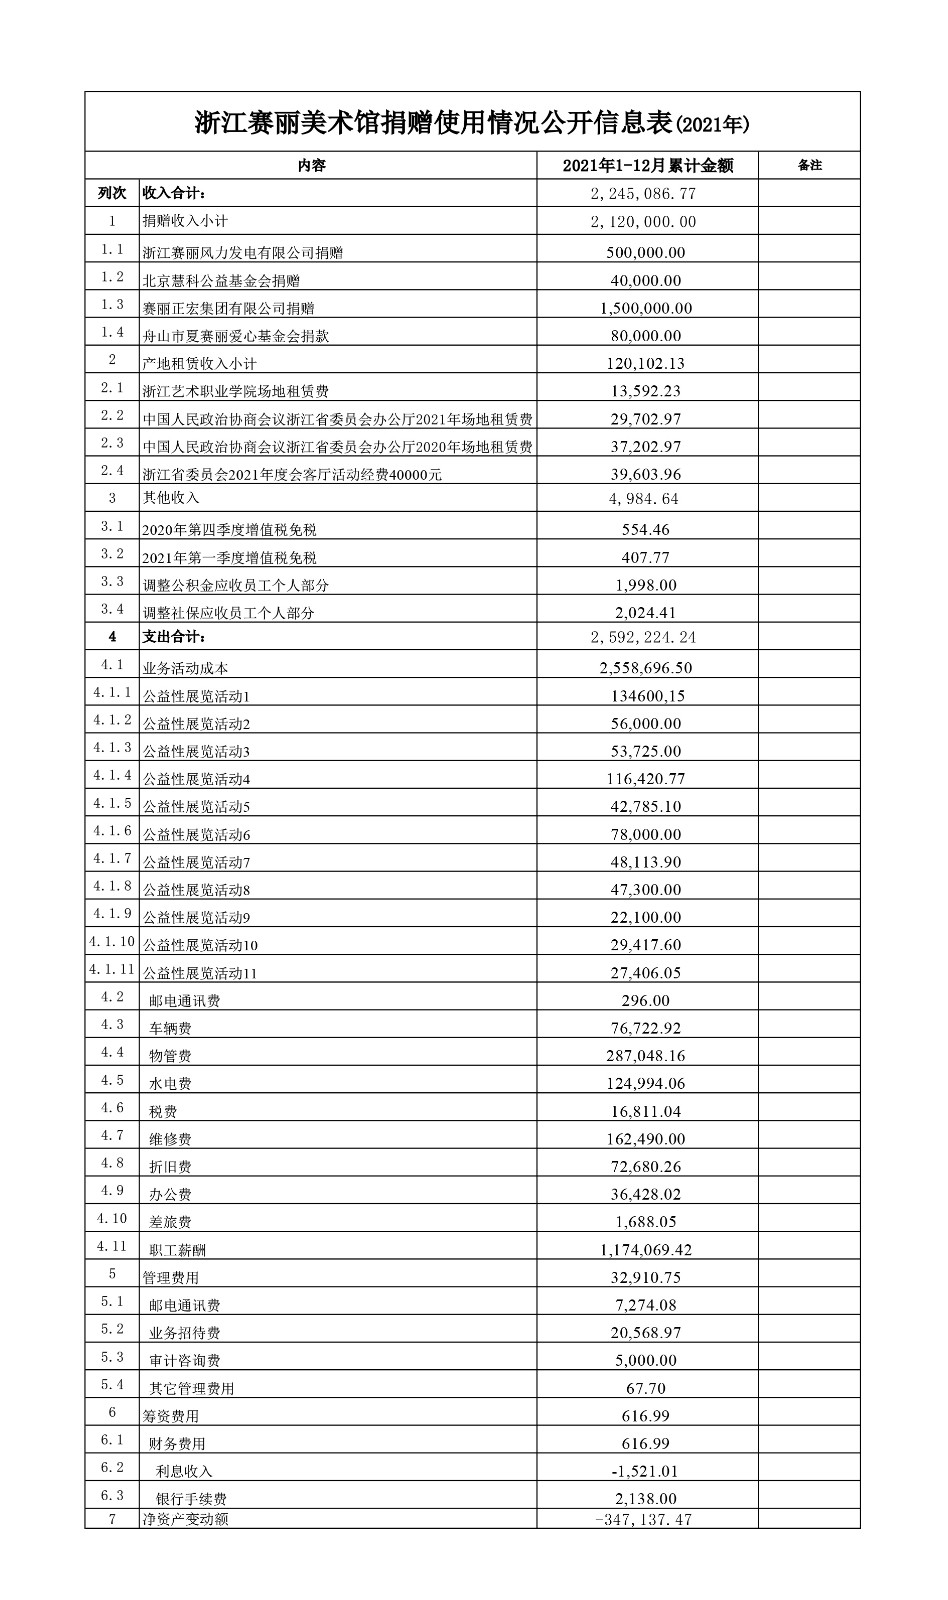 浙江赛丽美术馆捐赠使用情况公开信息表(2021年).jpg